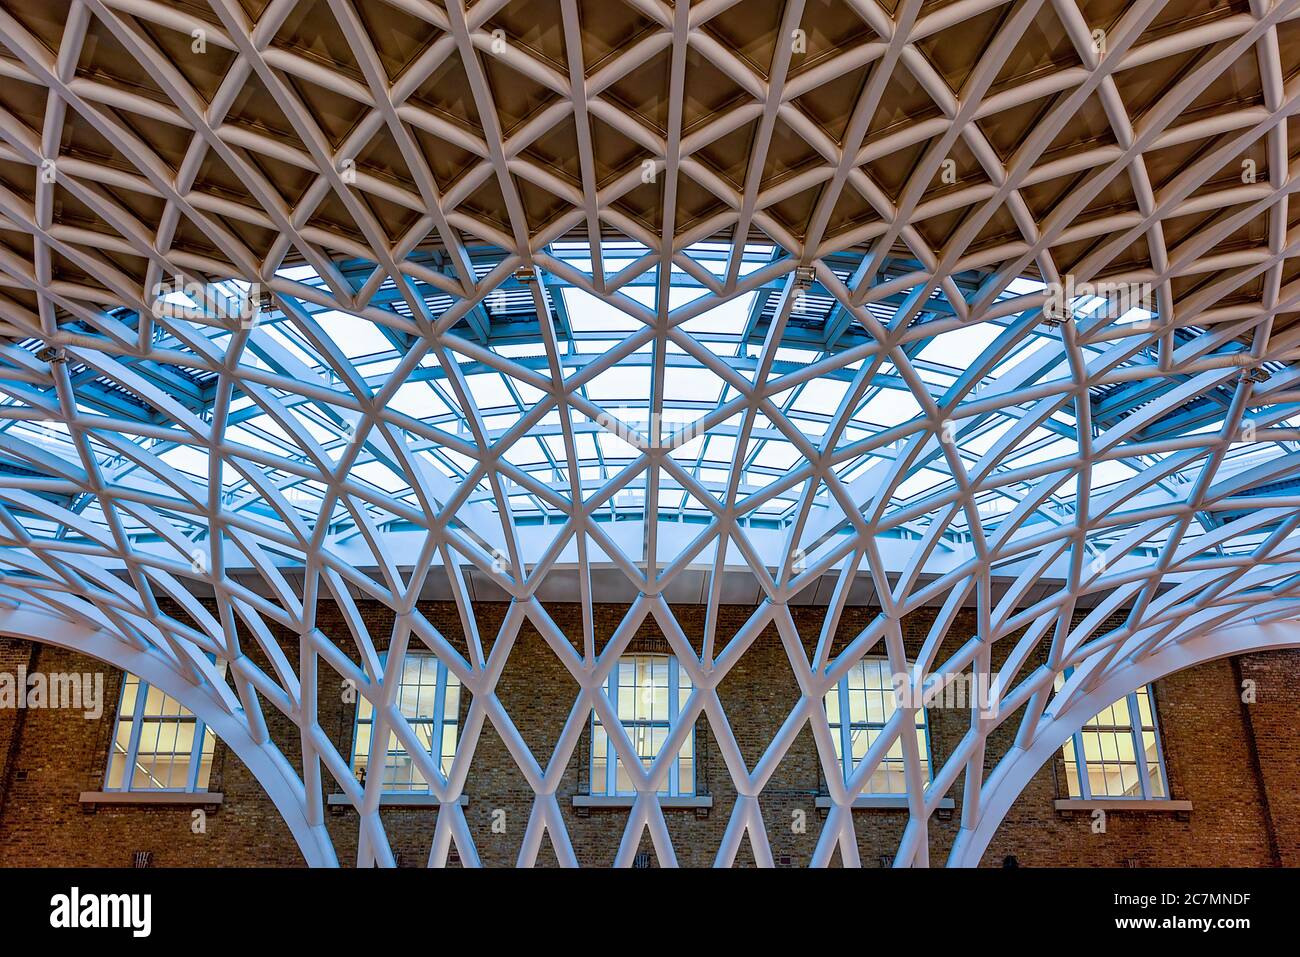 Londra, UK - Gen 2020: Il soffitto a reticolo contemporaneo dell'atrio della stazione ferroviaria di King's Cross, progettato da John McAslan e dai suoi partner. King's Cros Foto Stock